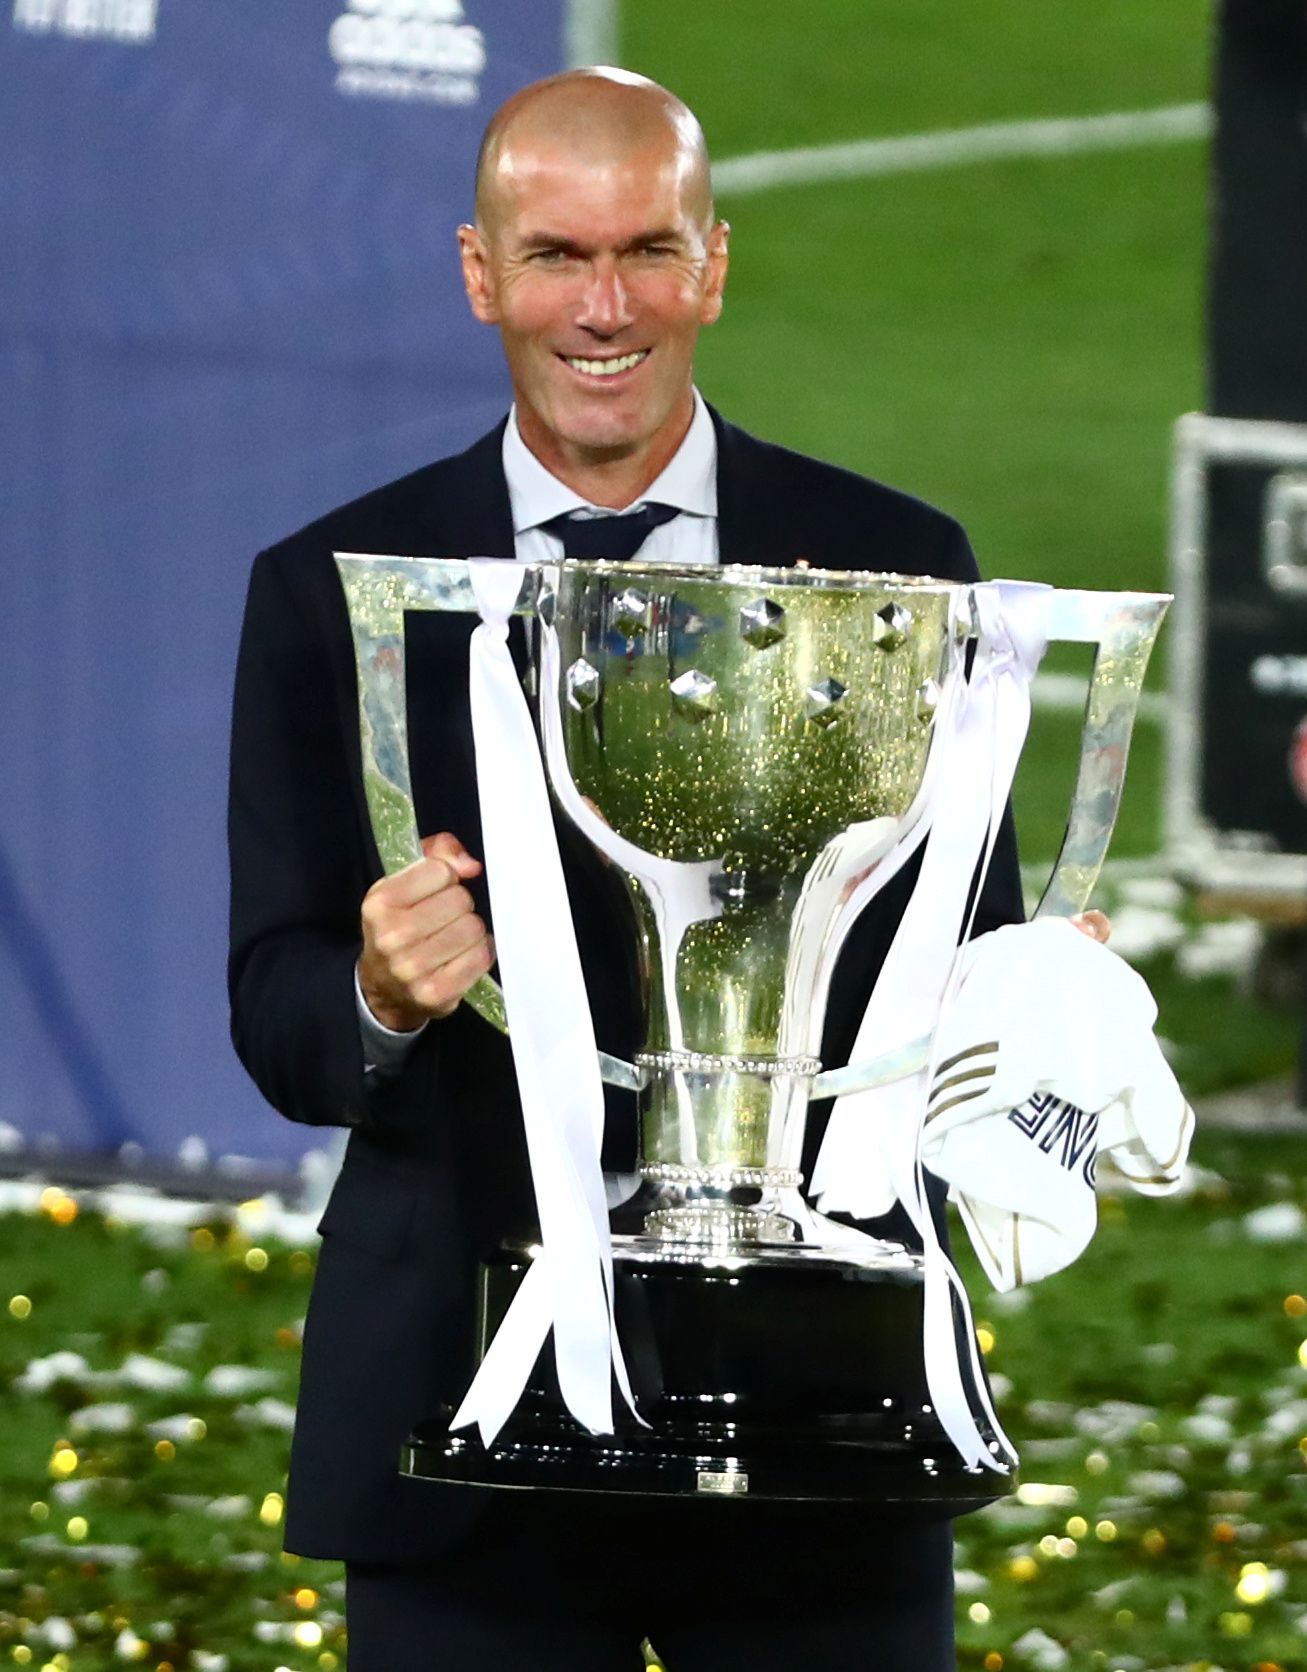 Real Madrid slaví zisk 34. titulu ve španělské lize, Zinedine Zidane